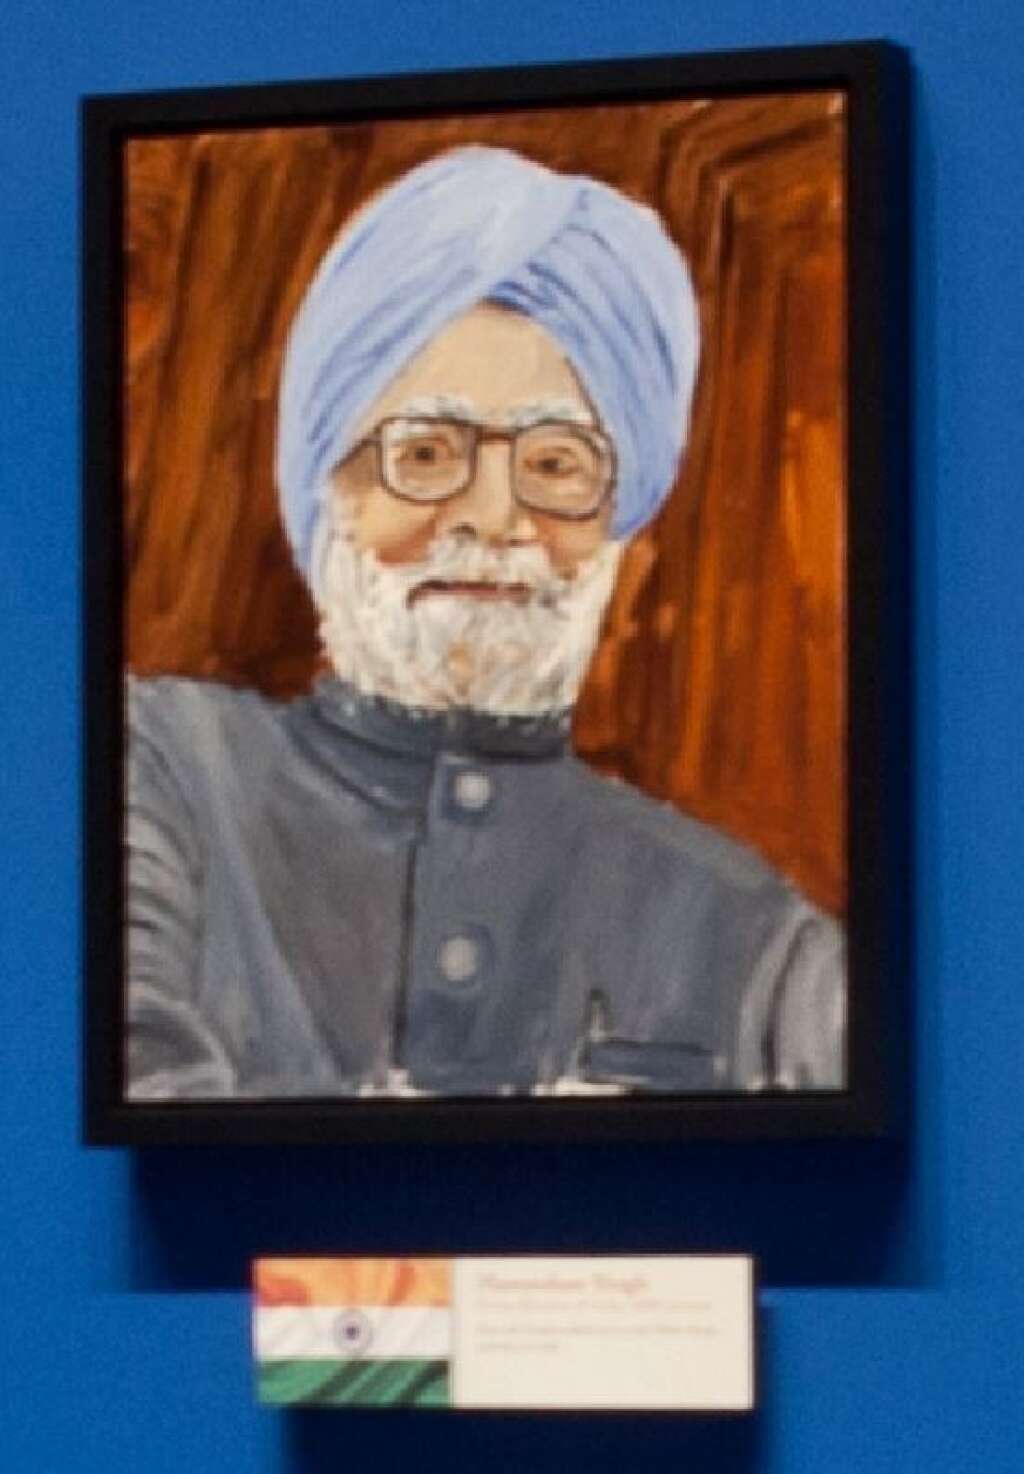 Les portraits de George W. Bush - Manmohan Singh, Premier ministre de l'Inde